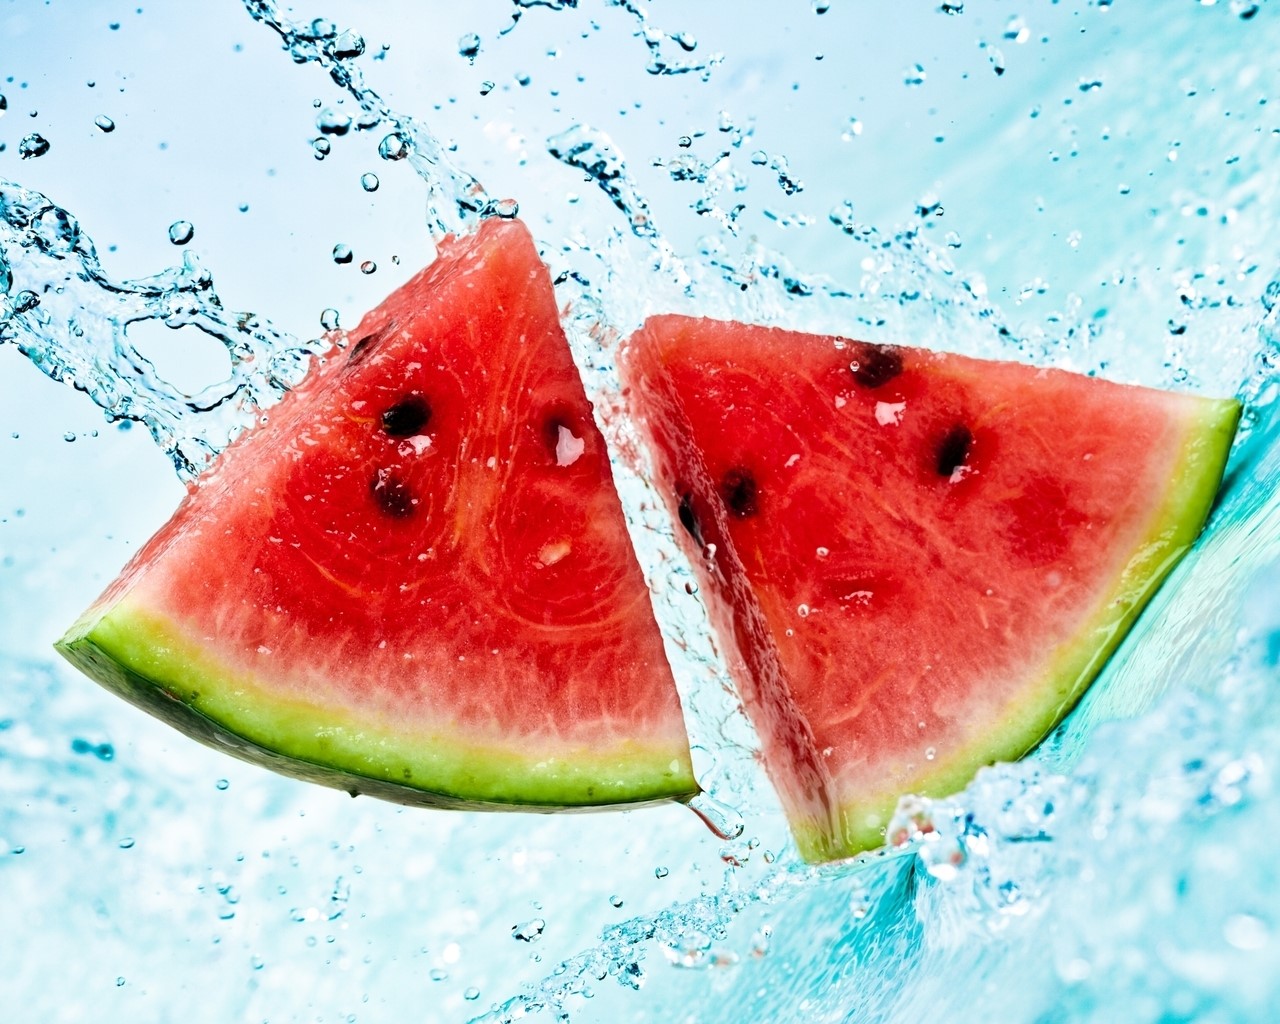 X watermelon slices water spray summer wallpaper jpg